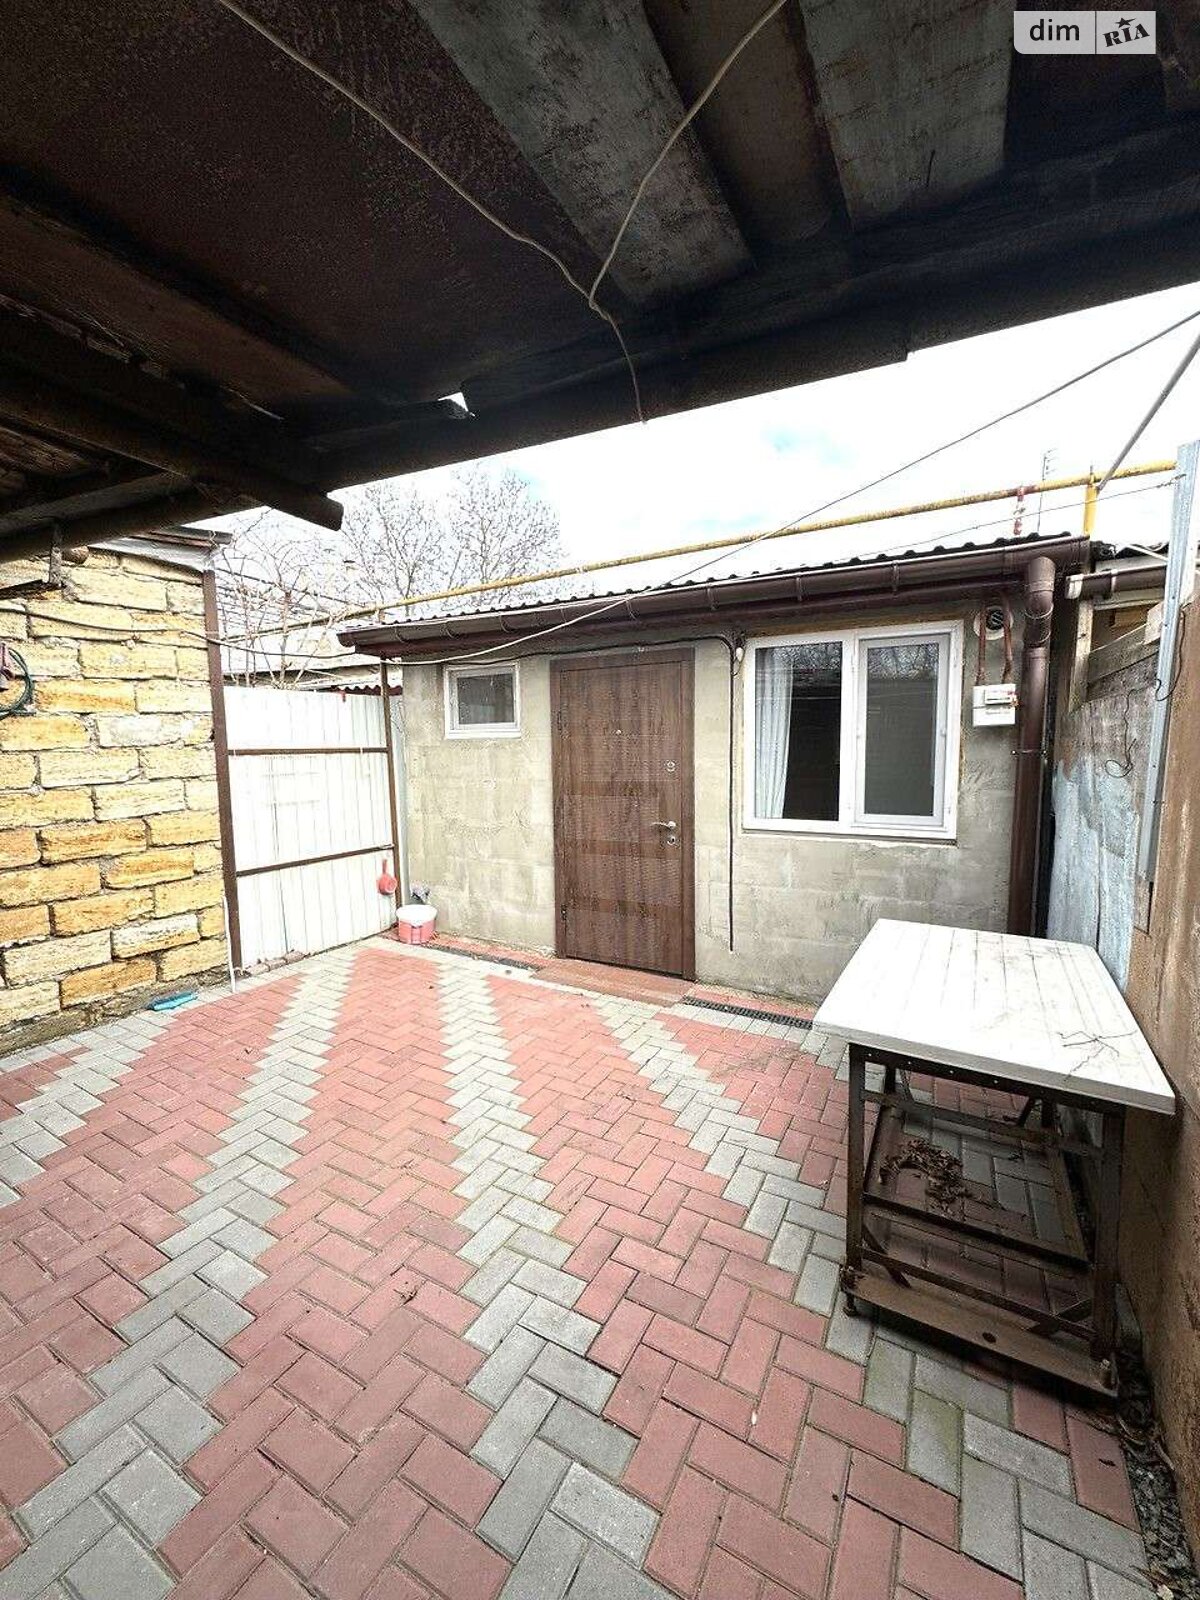 Продажа части дома в Одессе, улица Радужная, район Хаджибейский, 2 комнаты фото 1